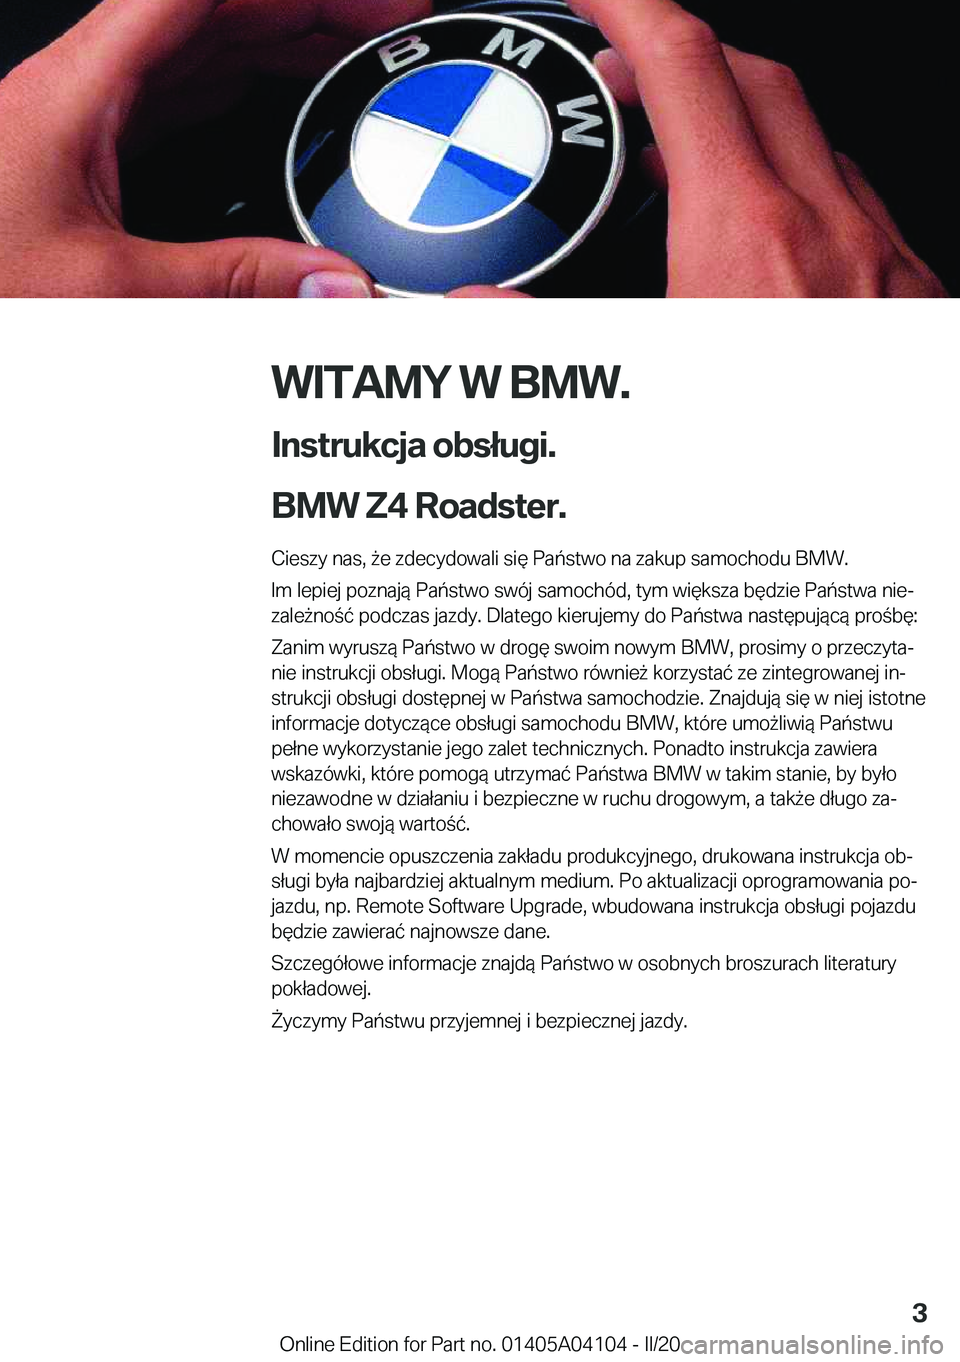 BMW Z4 2020  Instrukcja obsługi (in Polish) �W�I�T�A�M�Y��W��B�M�W�.
�I�n�s�t�r�u�k�c�j�a��o�b�s�ł�u�g�i�.
�B�M�W��Z�4��R�o�a�d�s�t�e�r�. �C�i�e�s�z�y��n�a�s�,�9�e��z�d�e�c�y�d�o�w�a�l�i��s�i�